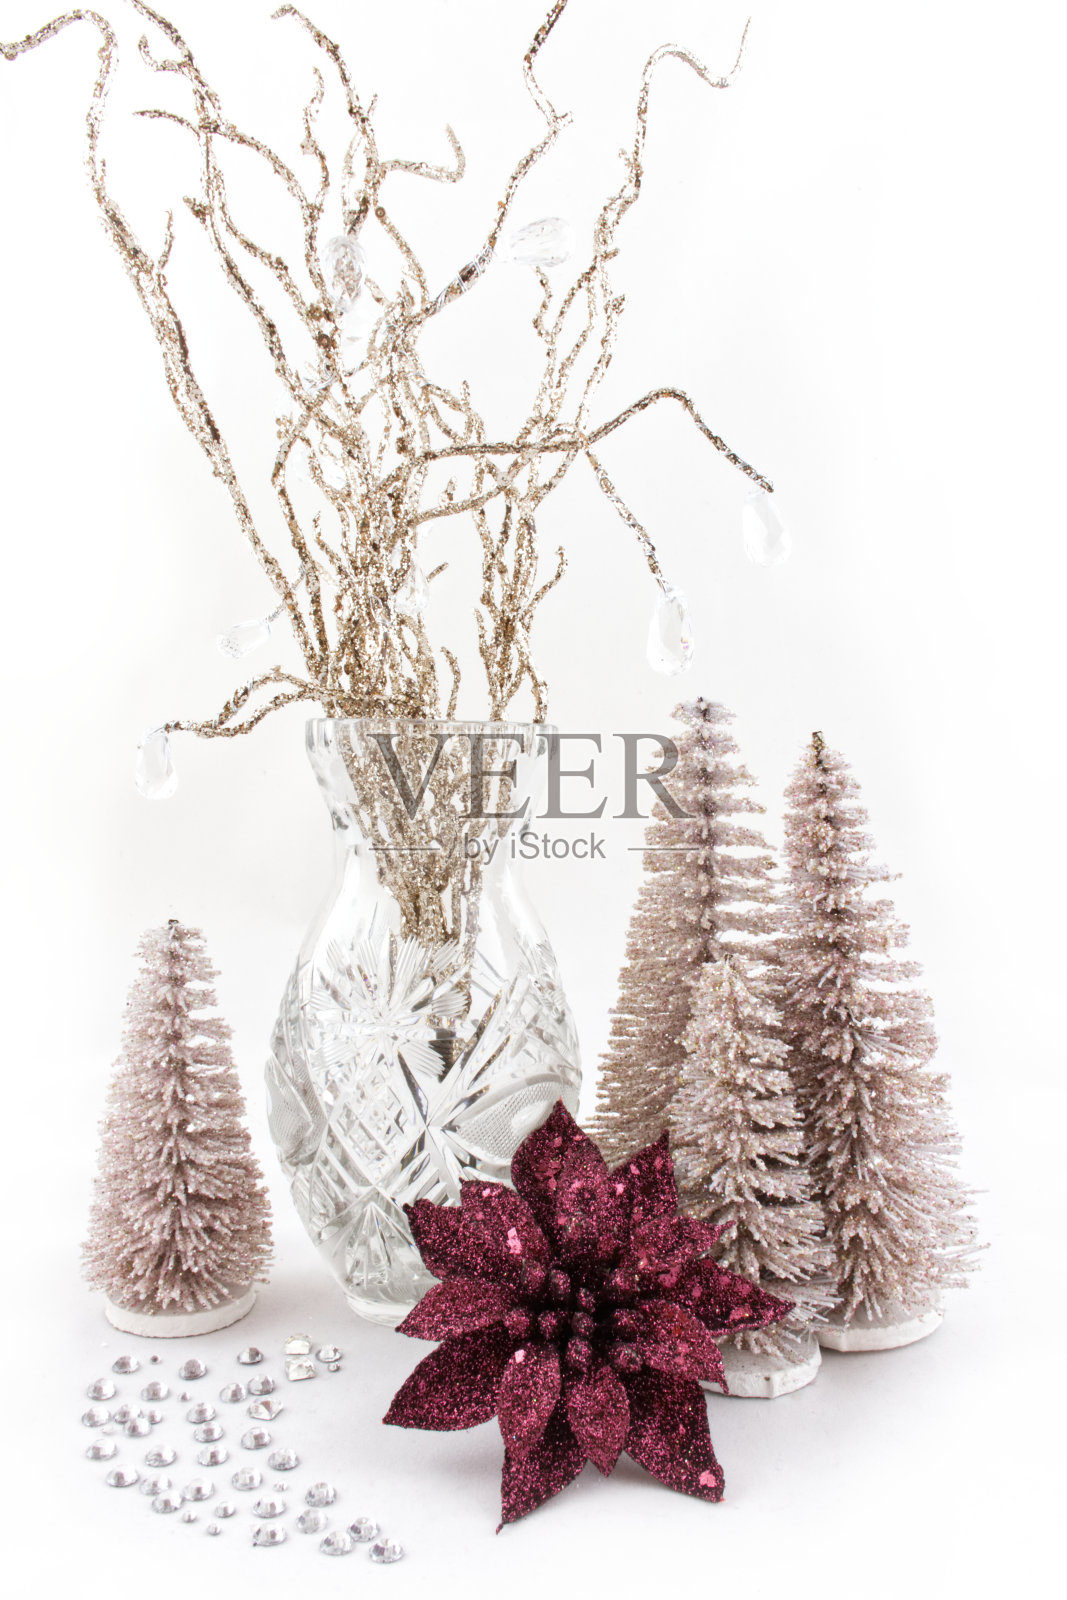 花瓶里用锦缎树枝做成的圣诞装饰品照片摄影图片